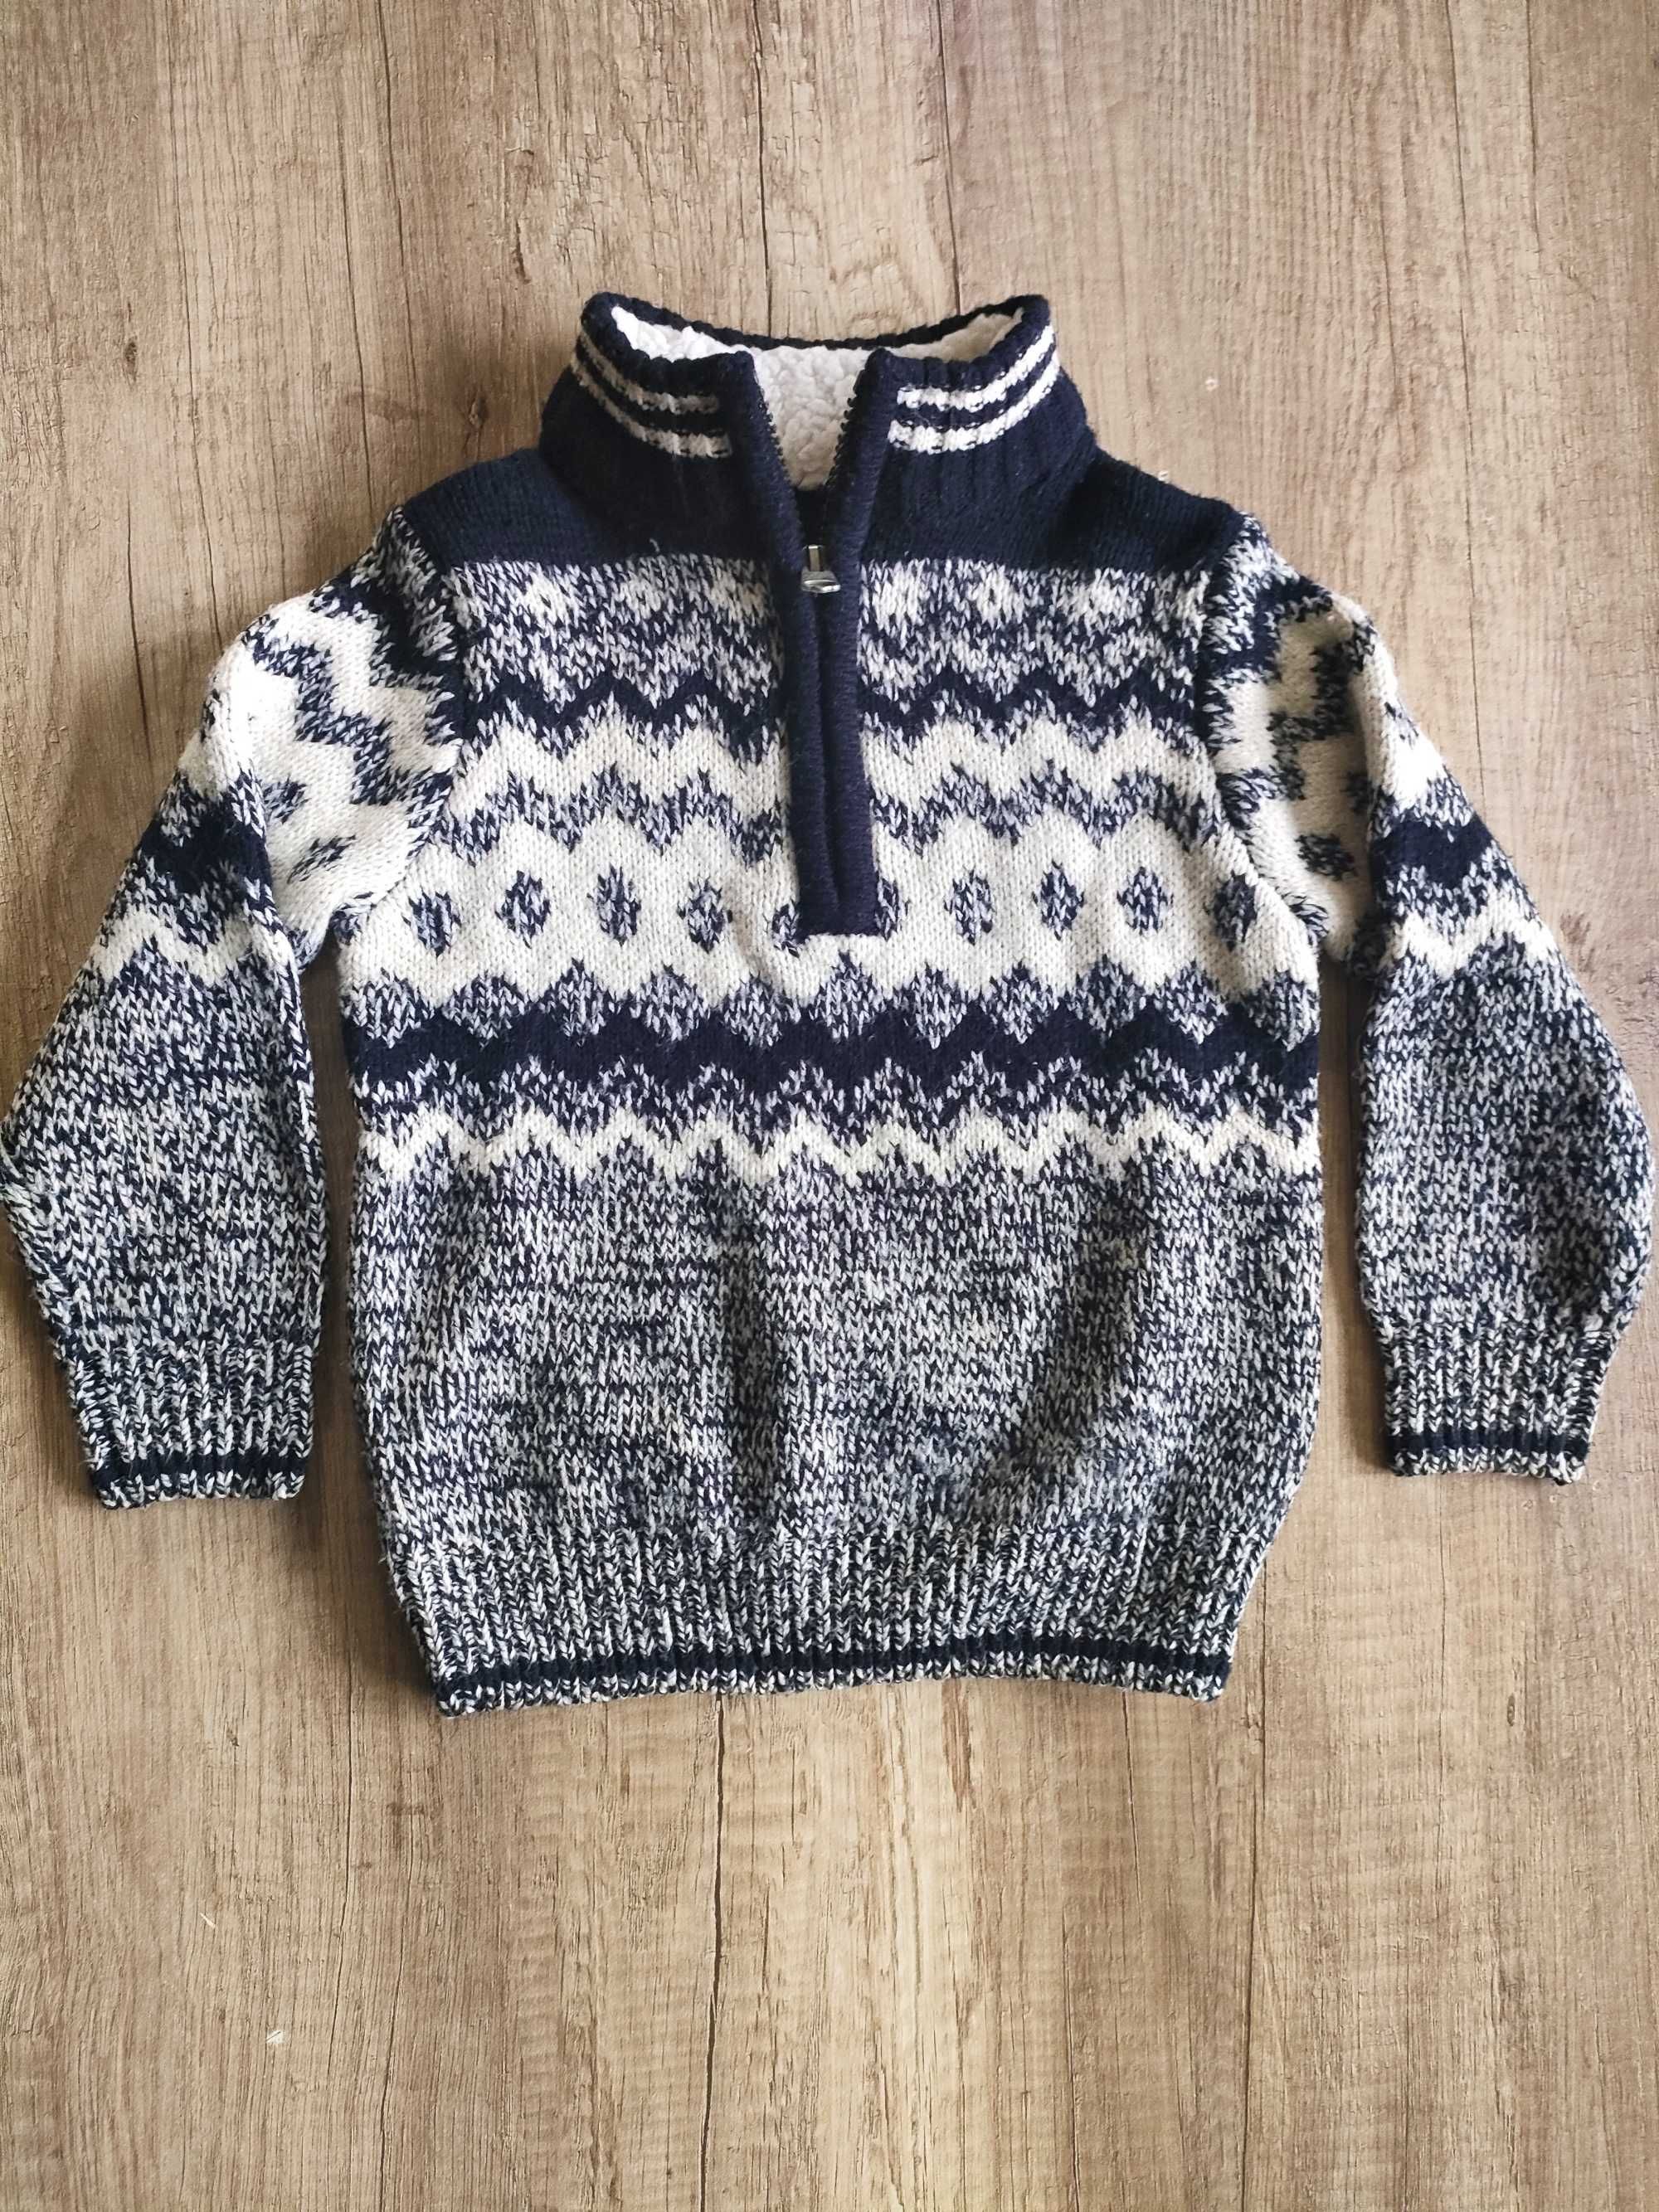 Sweterek chłopięcy skandynawski  3-4 lata  98-104 cm Dunnes Stores